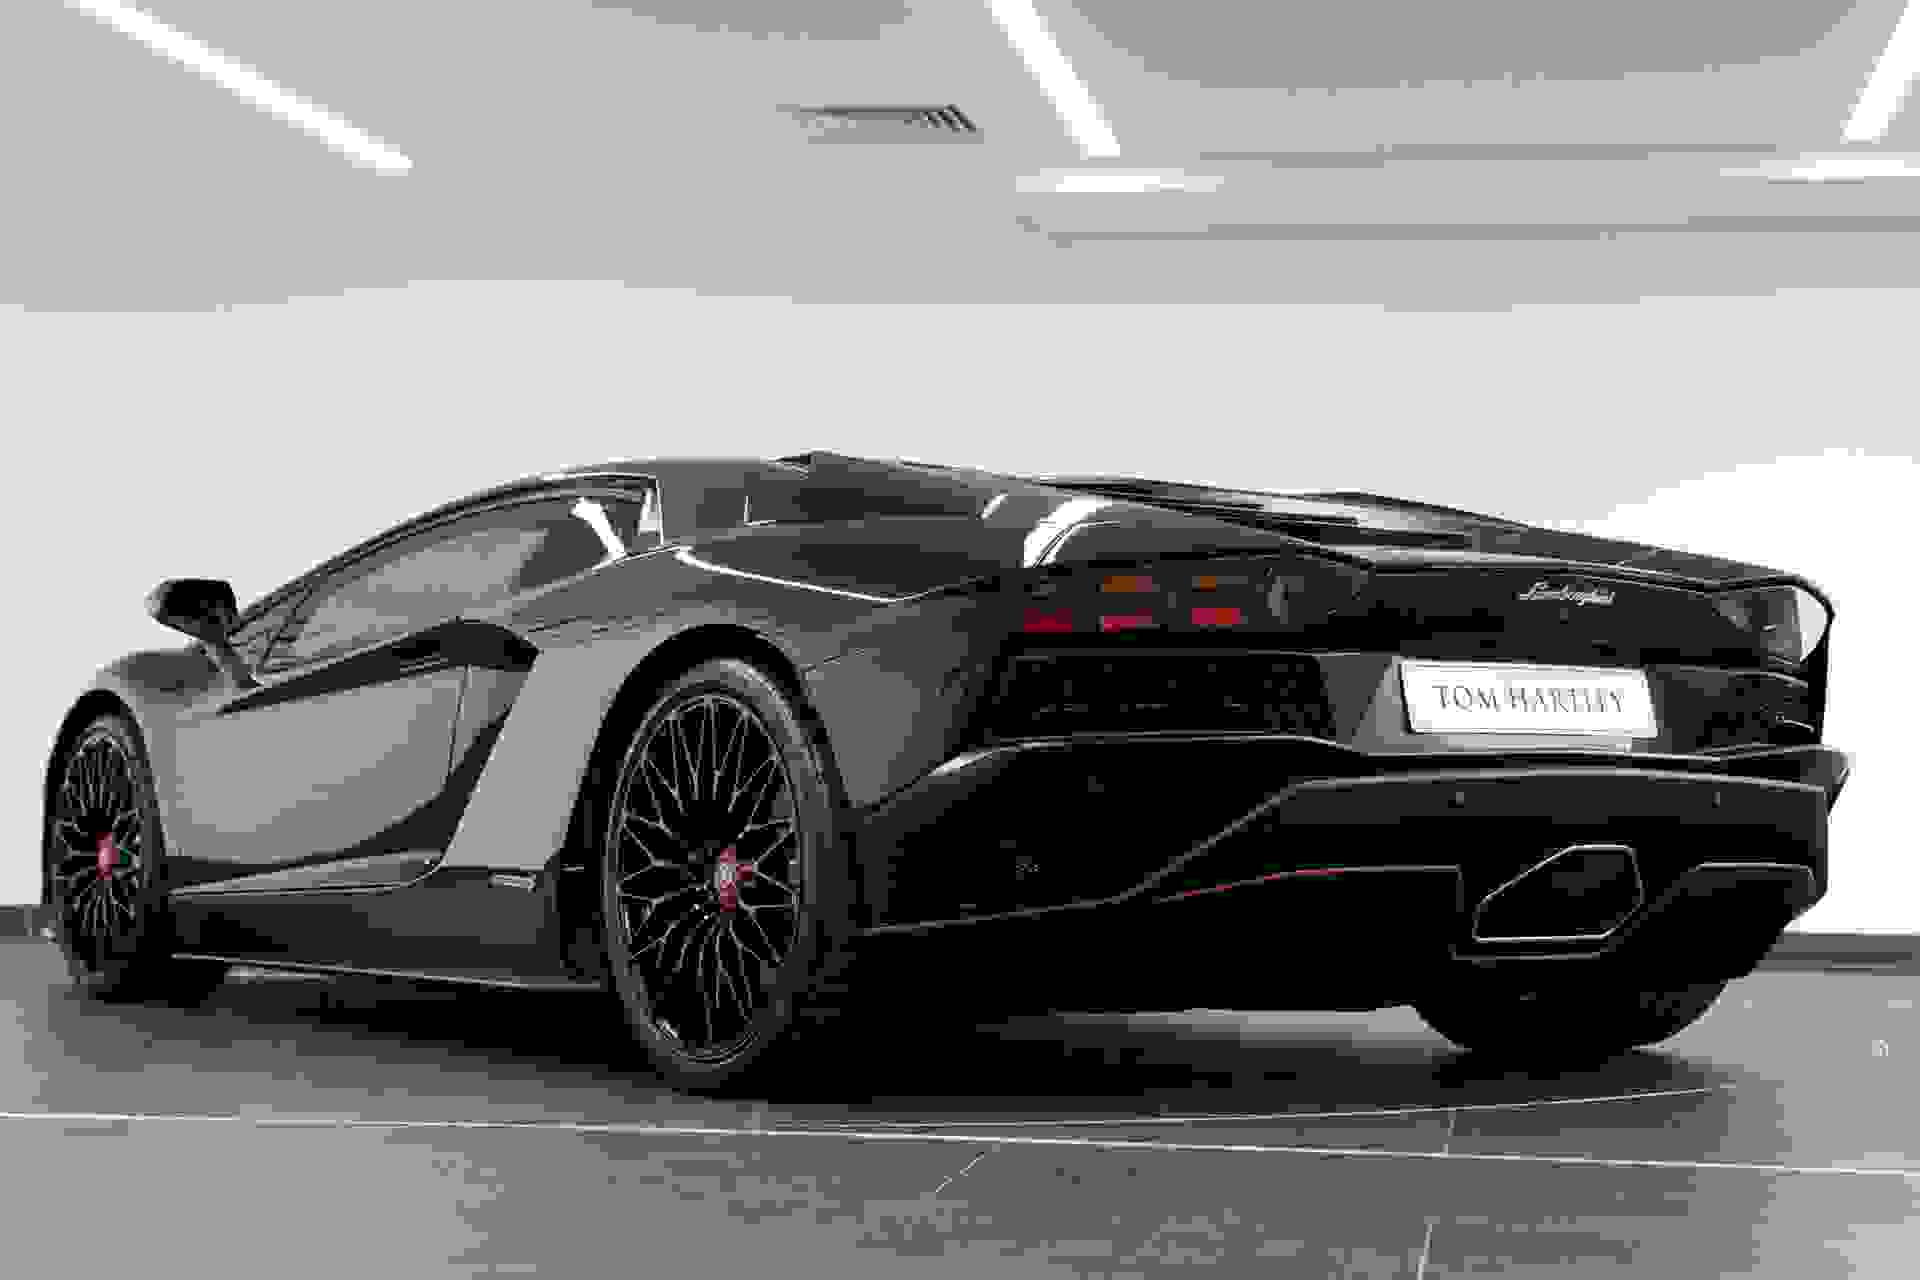 Lamborghini AVENTADOR S Photo 0bacfb70-96c2-4473-871b-fa54b27908c9.jpg